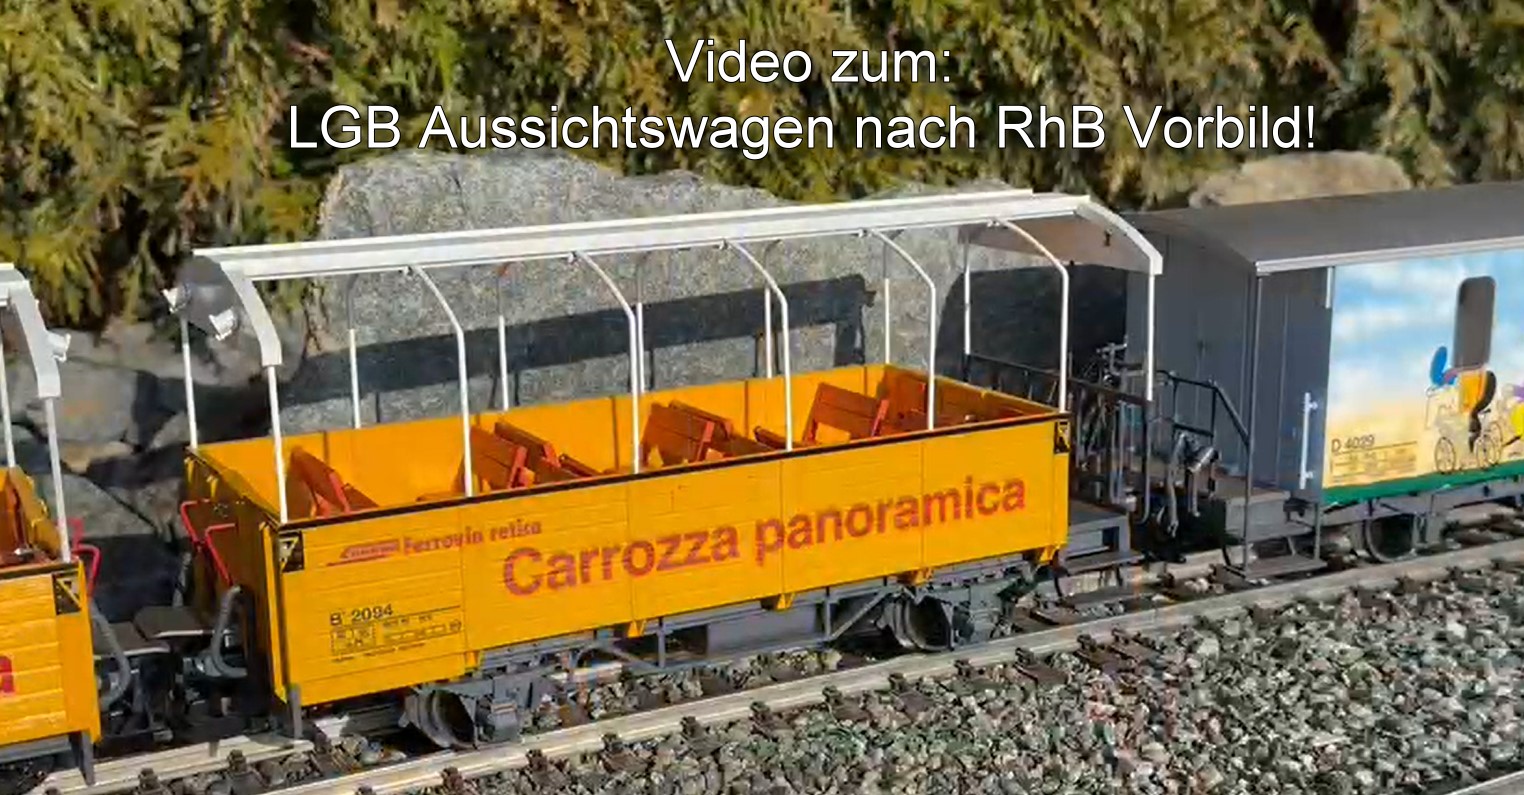 Video zum: LGB Aussichtswagen nach RhB Vorbild. Mit Krokodil und Fahrradwagen. 